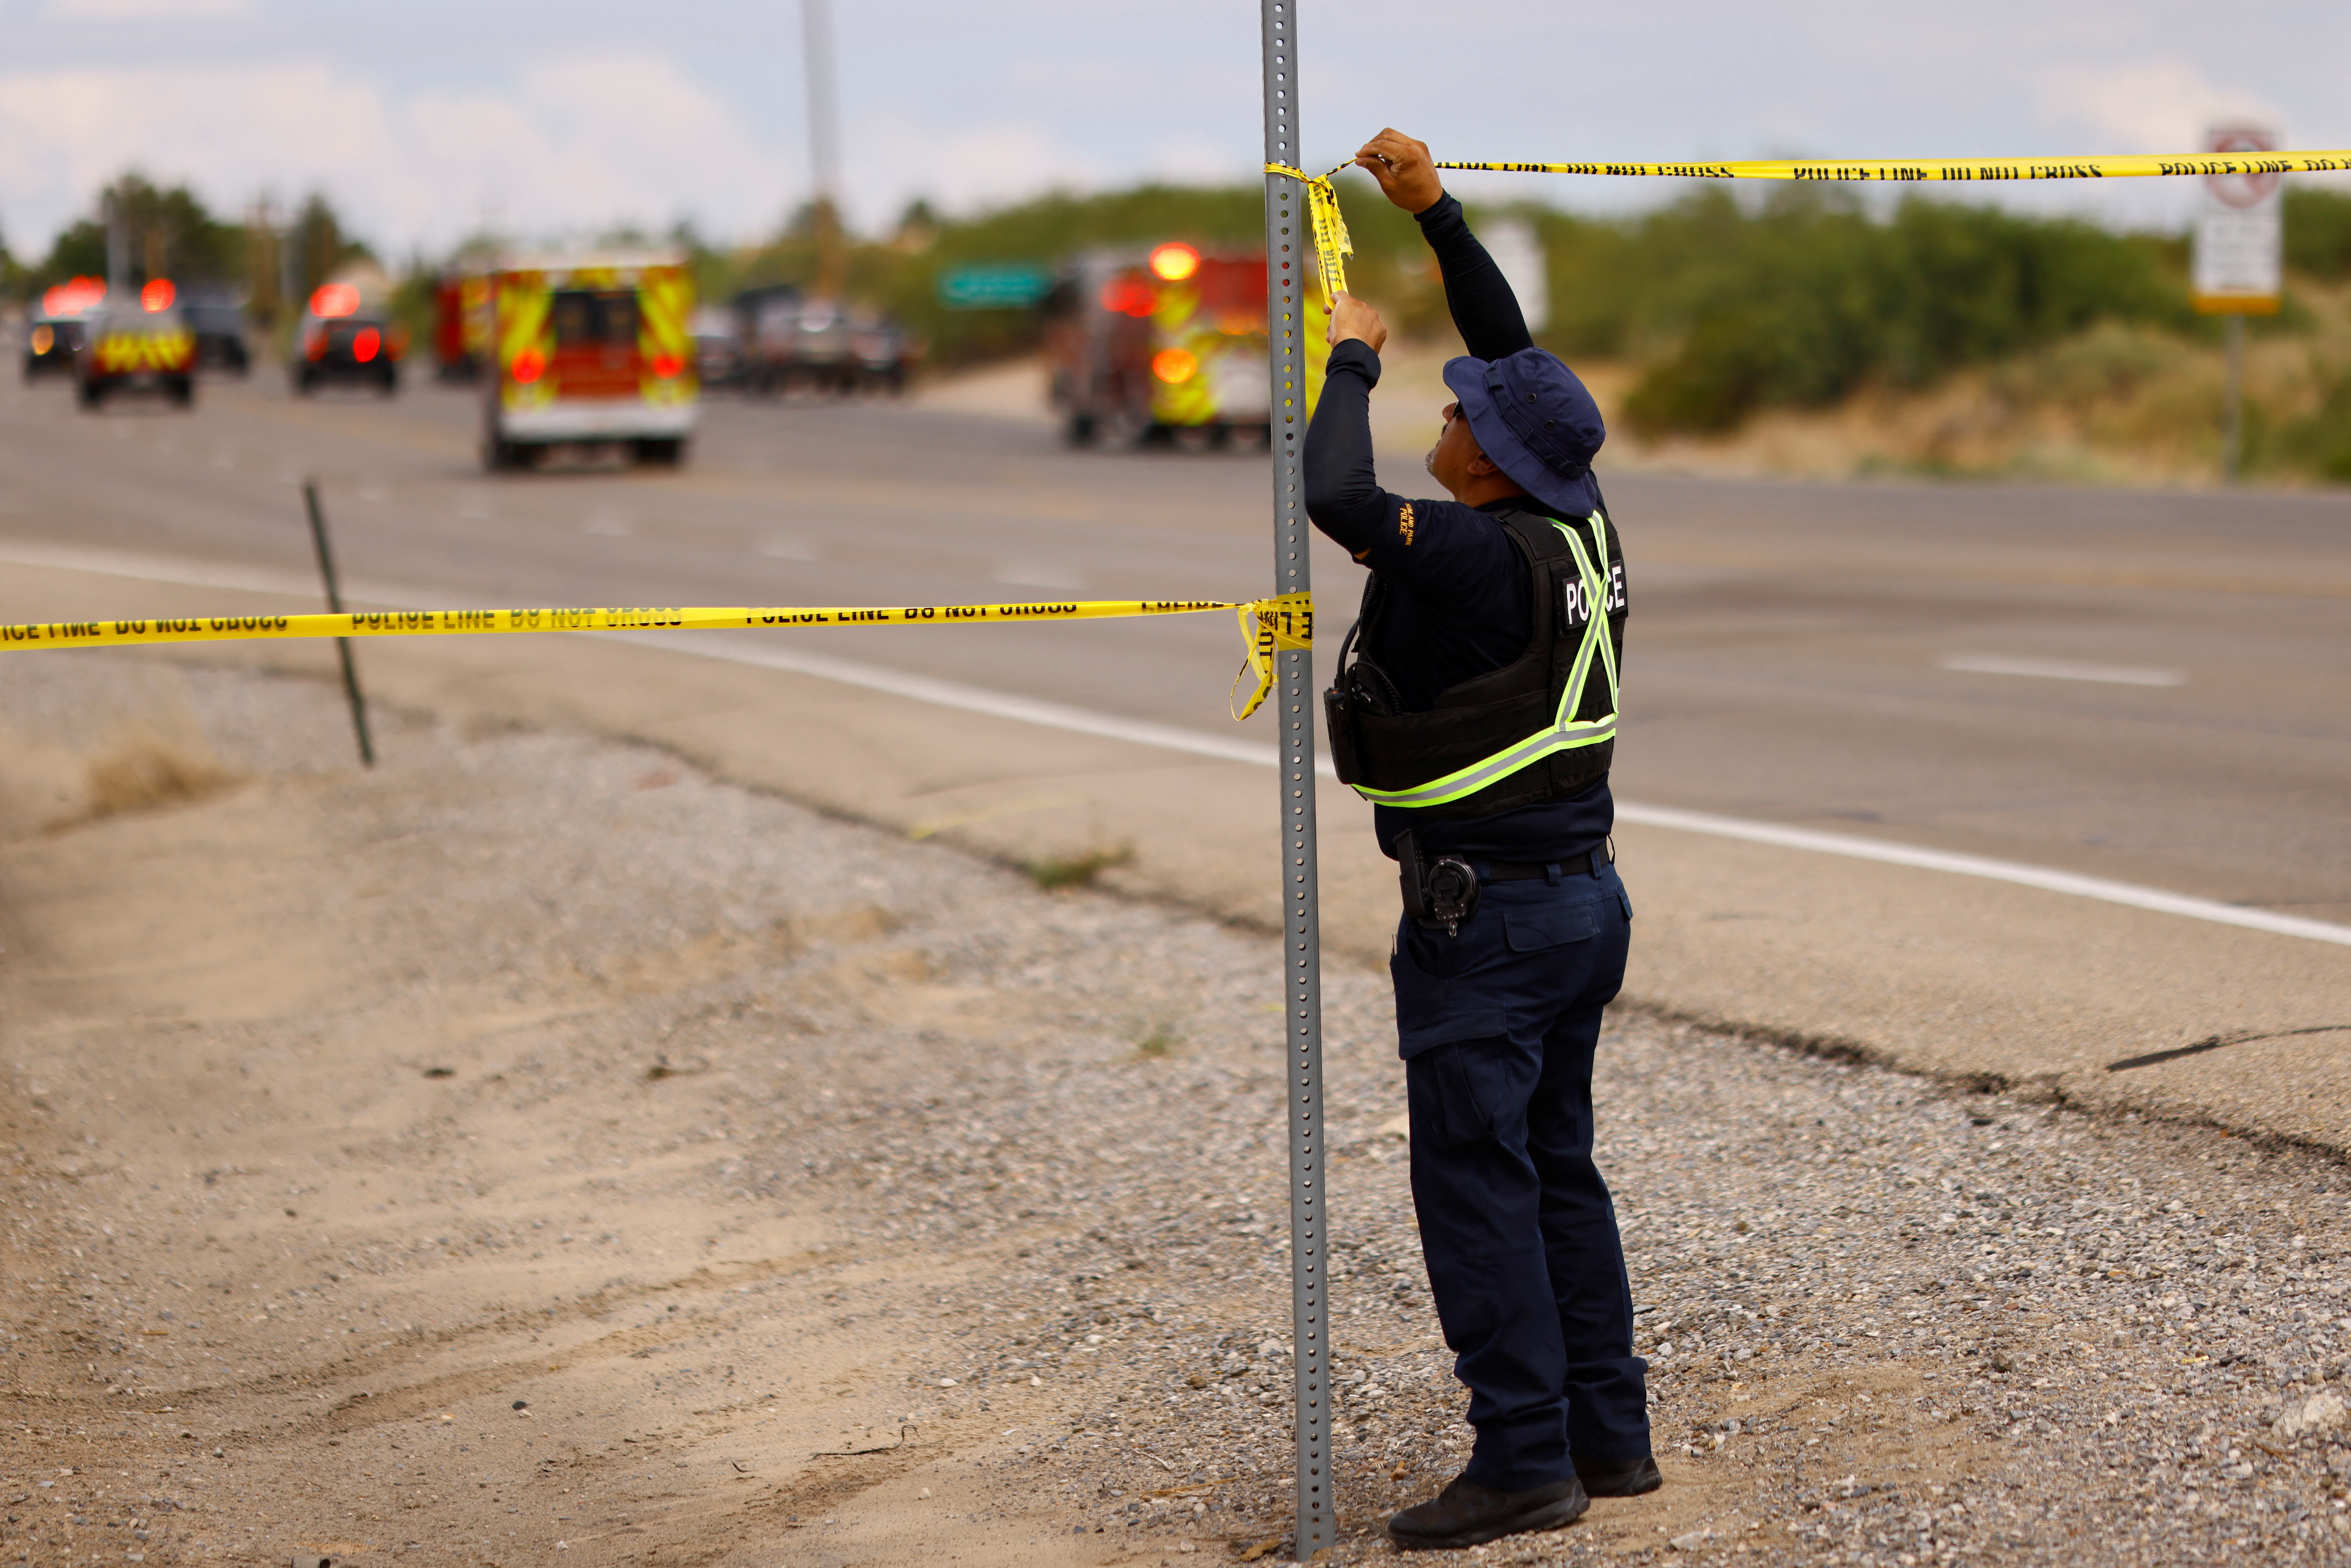 Archivo: Un policía acordona un área en Santa Teresa, Nuevo México. REUTERS/Jose Luis Gonzalez